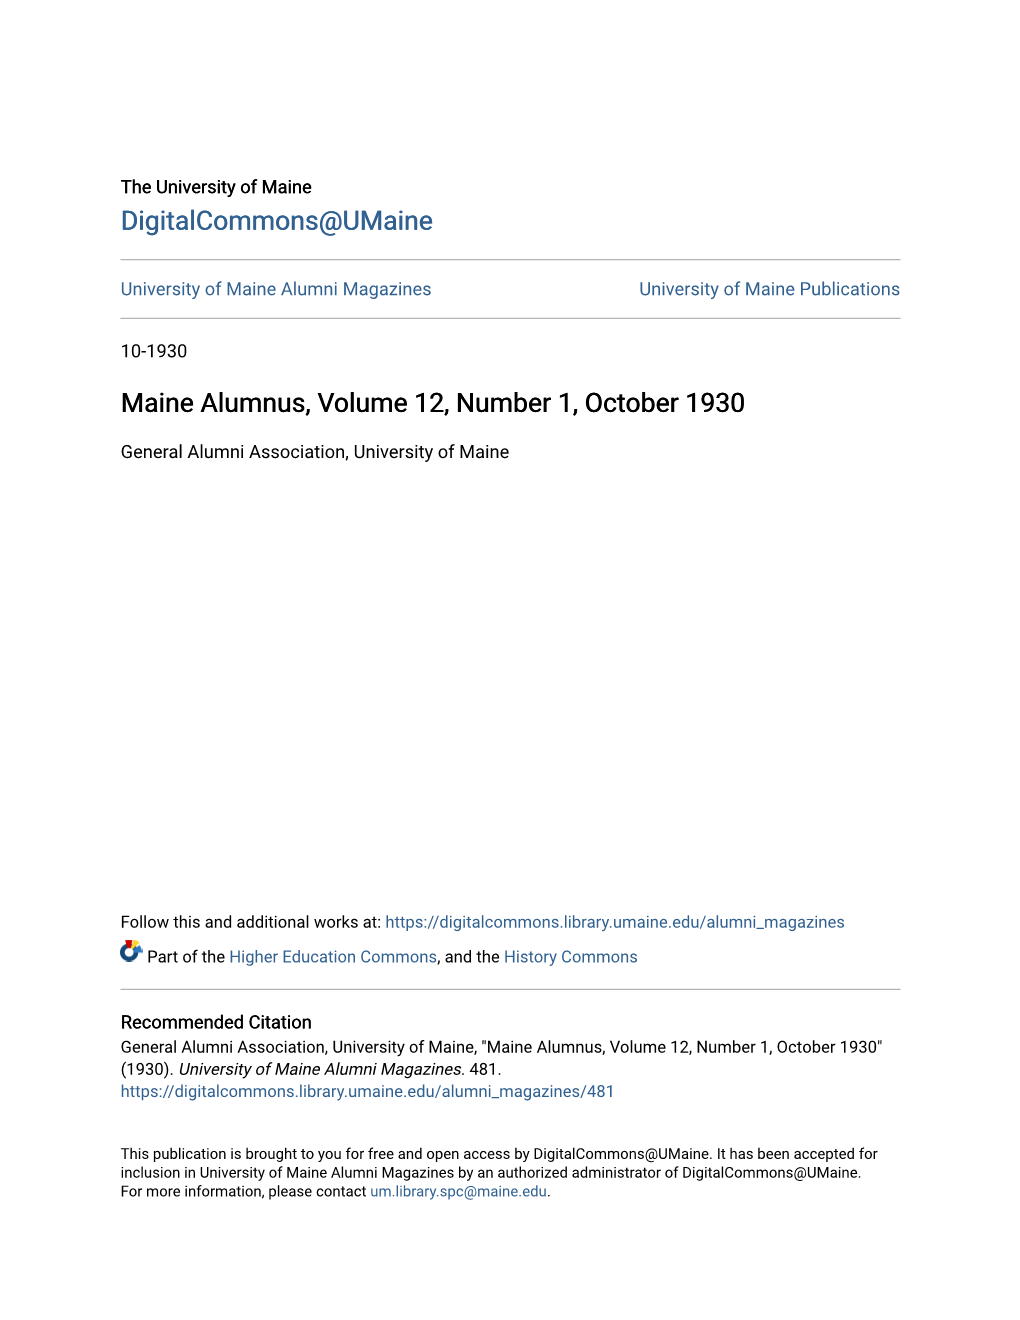 Maine Alumnus, Volume 12, Number 1, October 1930